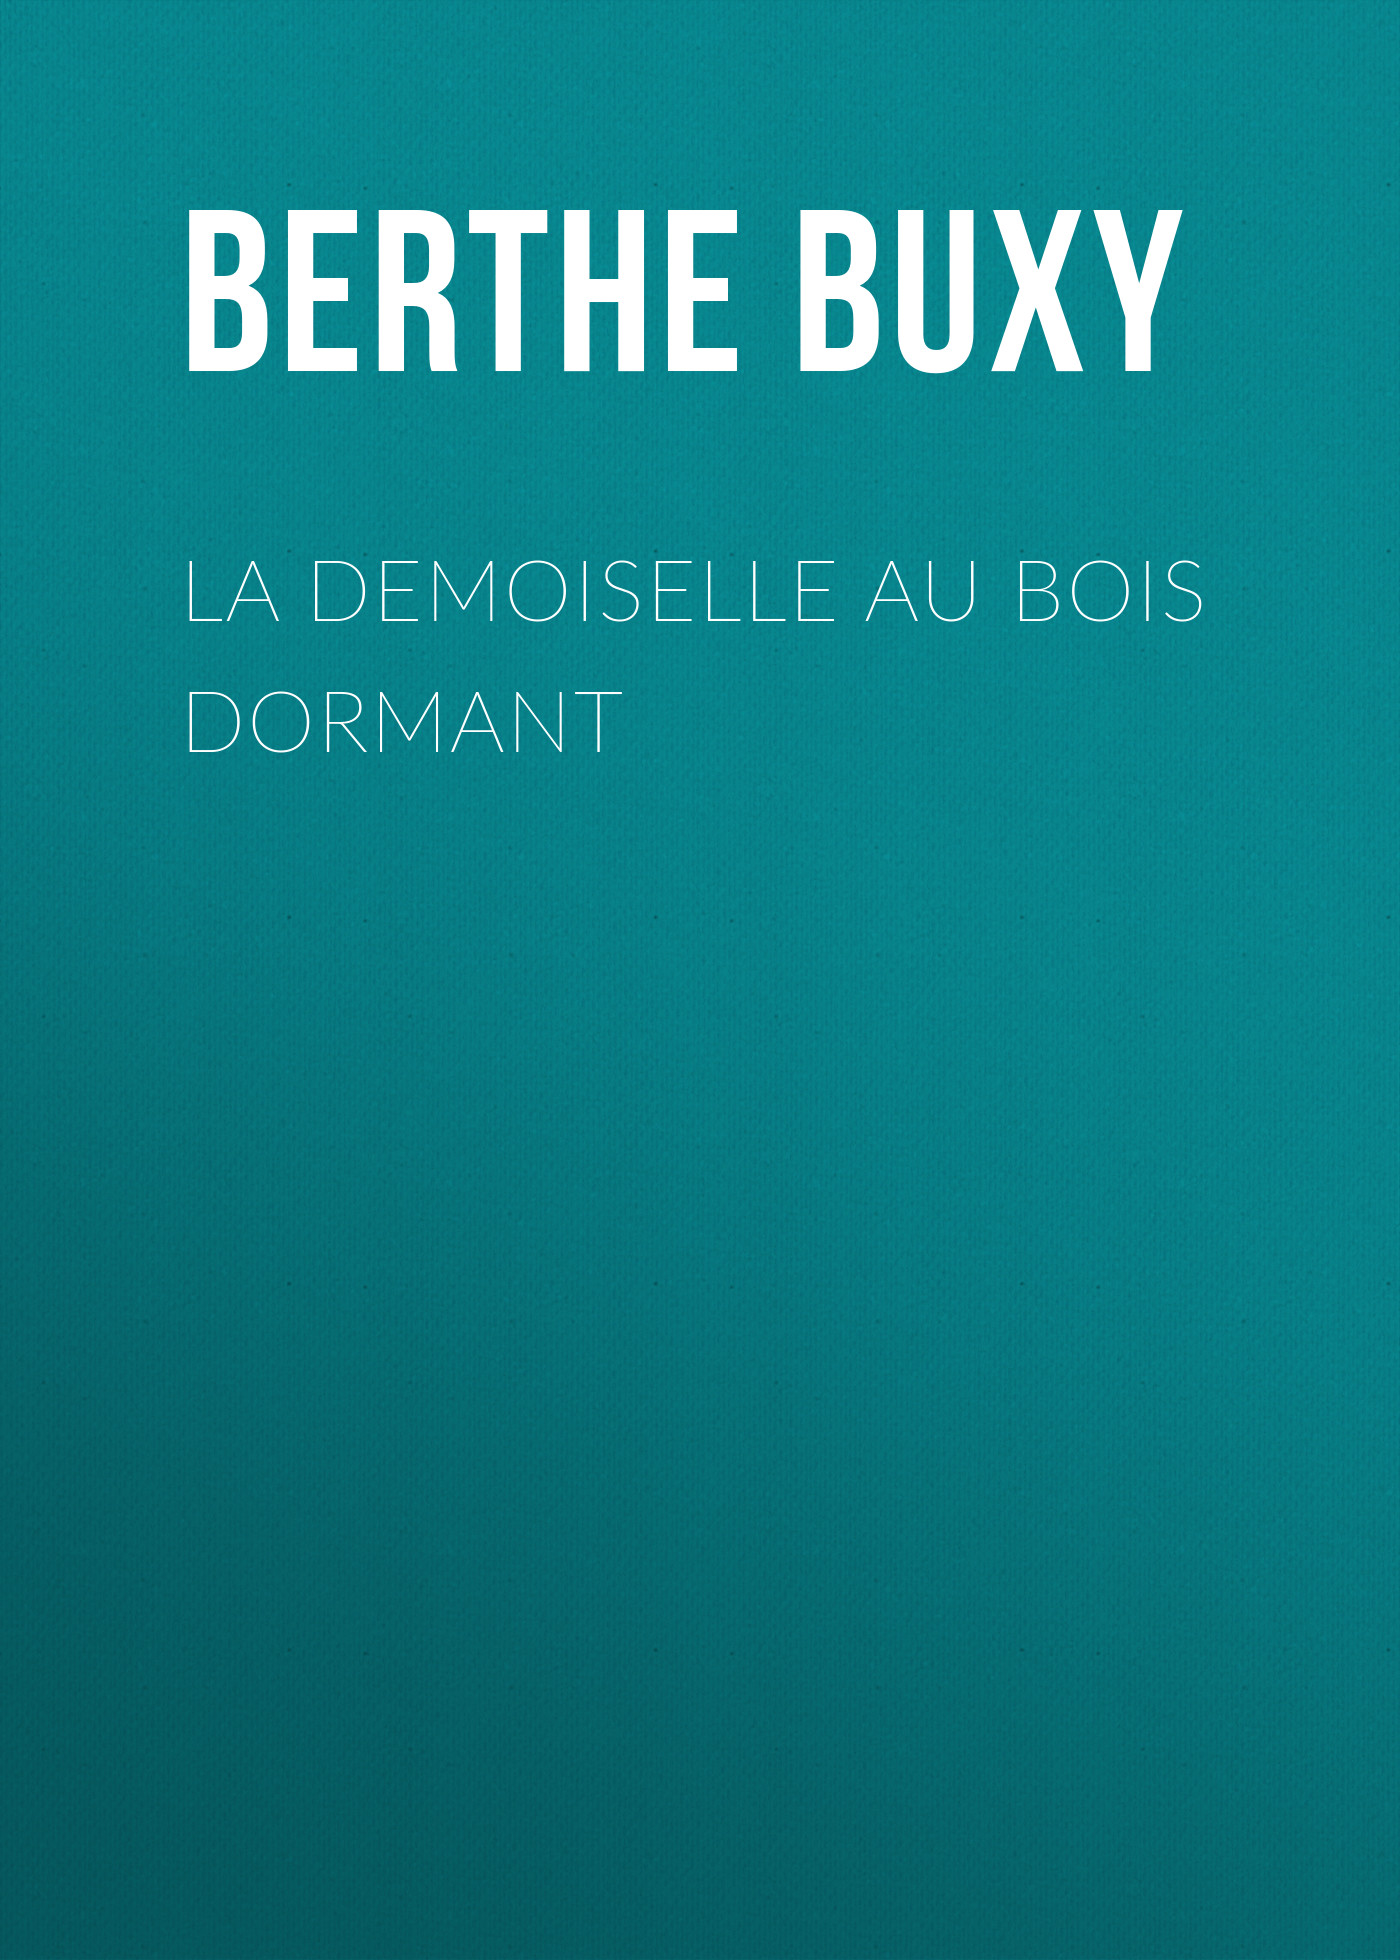 Книга La Demoiselle au Bois Dormant из серии , созданная Berthe Buxy, может относится к жанру Зарубежная старинная литература, Зарубежная классика. Стоимость электронной книги La Demoiselle au Bois Dormant с идентификатором 24180740 составляет 0.90 руб.